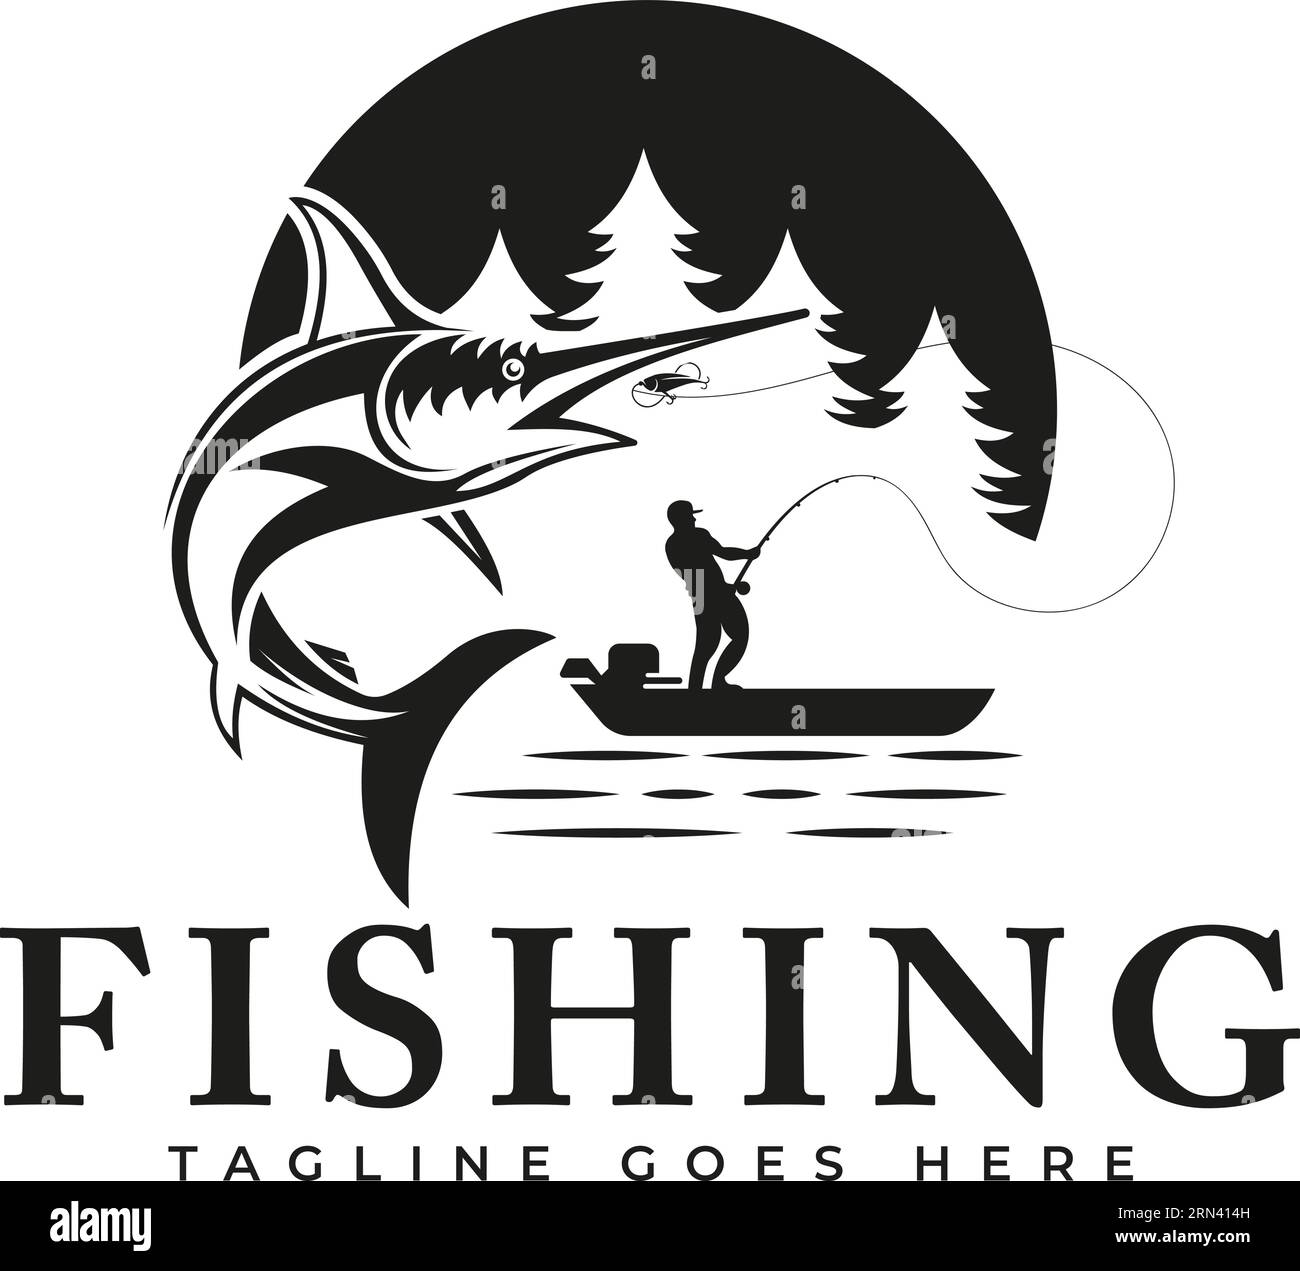 Modello di disegno della pesca illustrazione pesce spada che salta fuori dall'acqua, adatto per l'uso come attività di pesca. Logo pesca sportiva Illustrazione Vettoriale